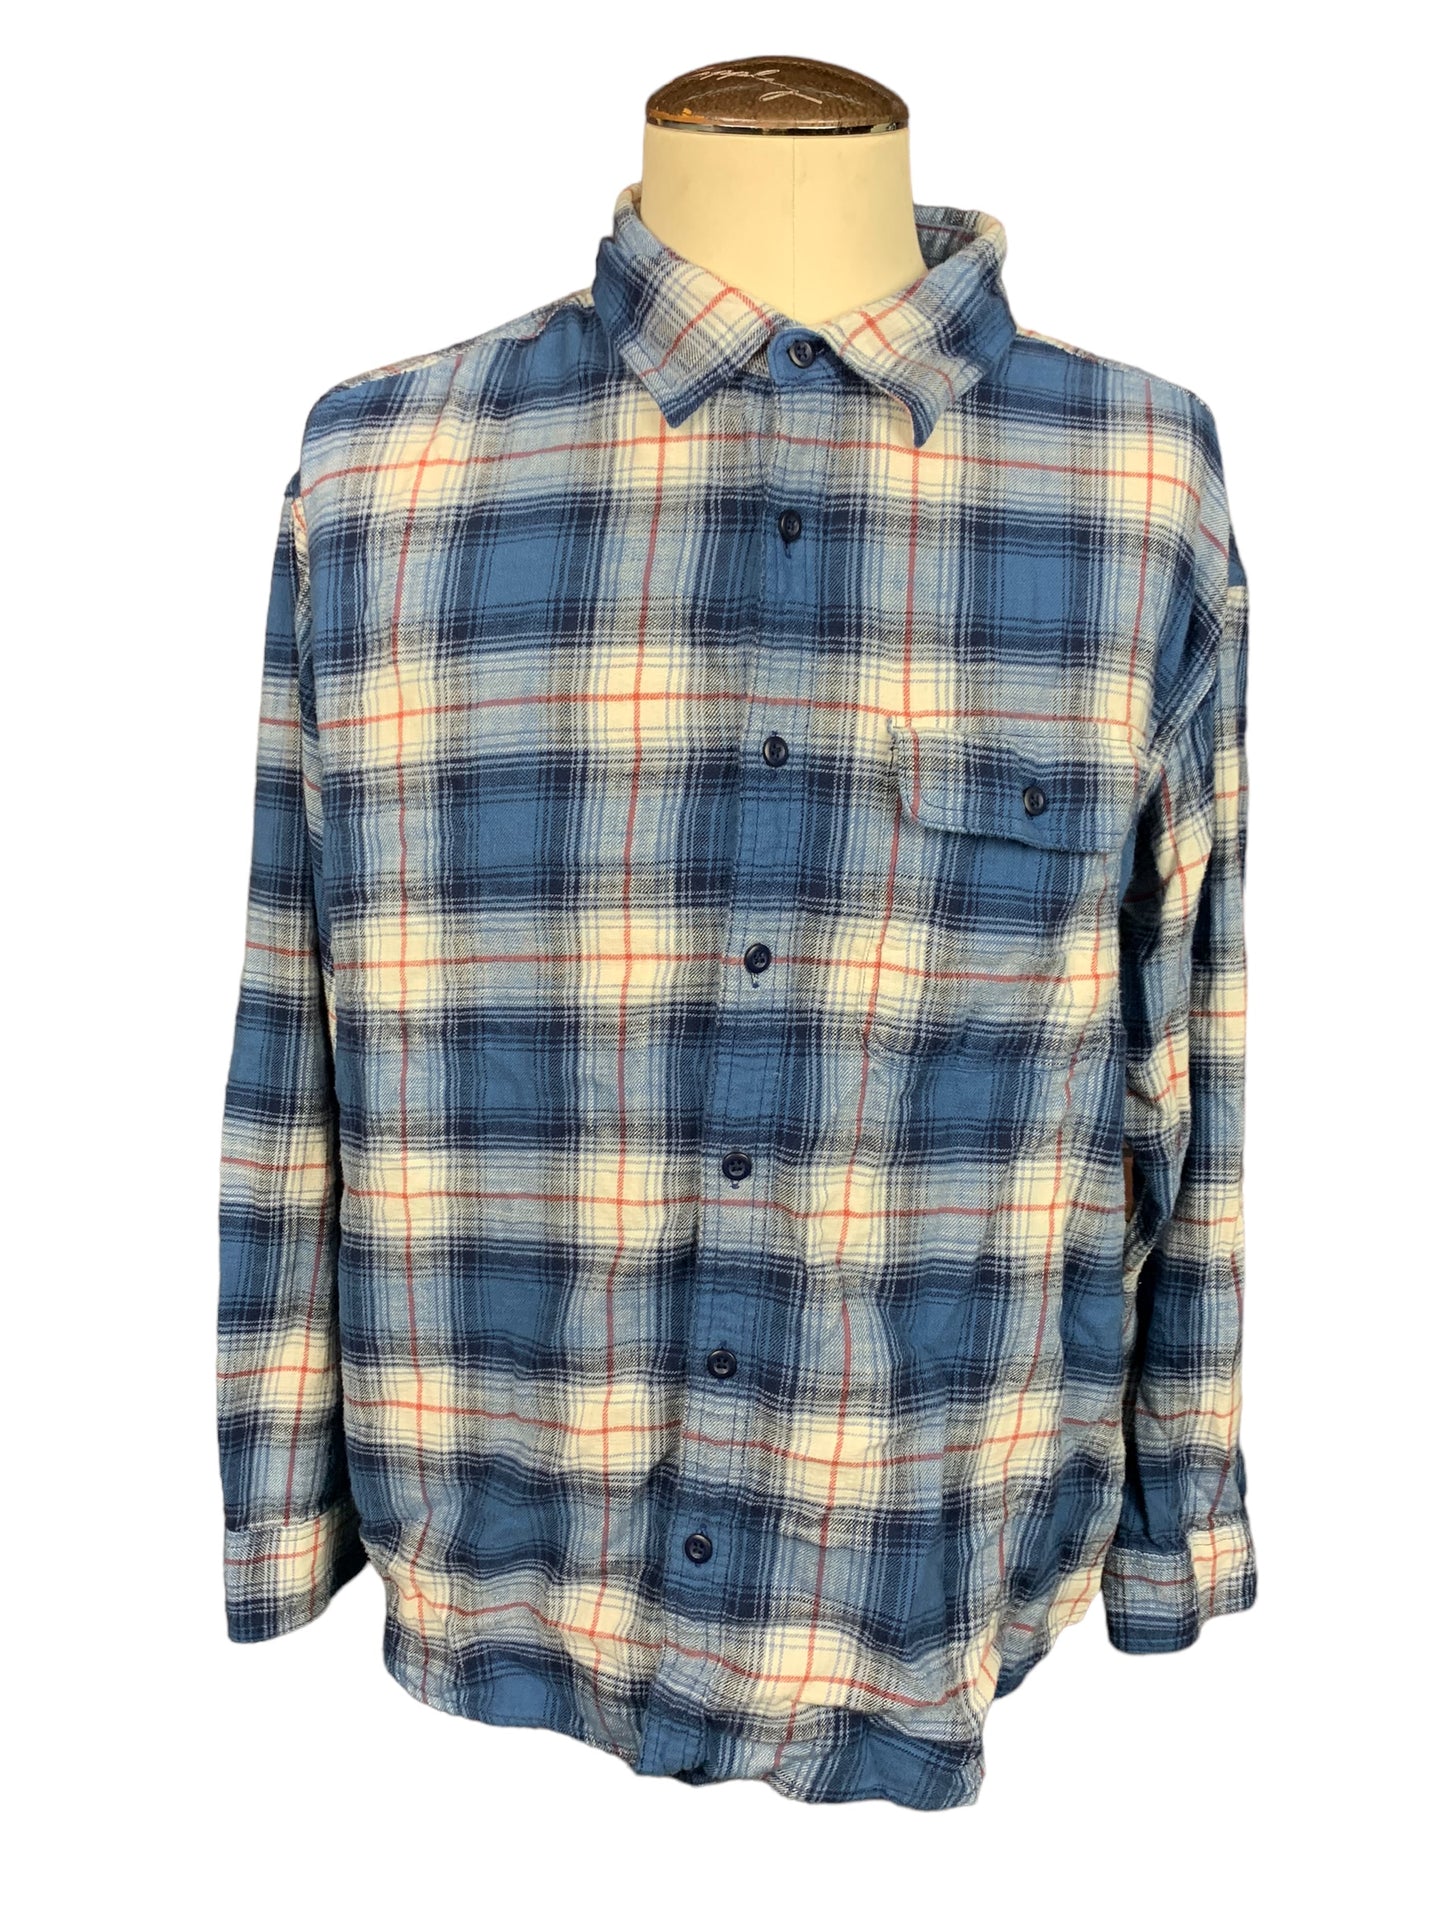 Steven Rhodes Flannel Shirt Custom Rework XL